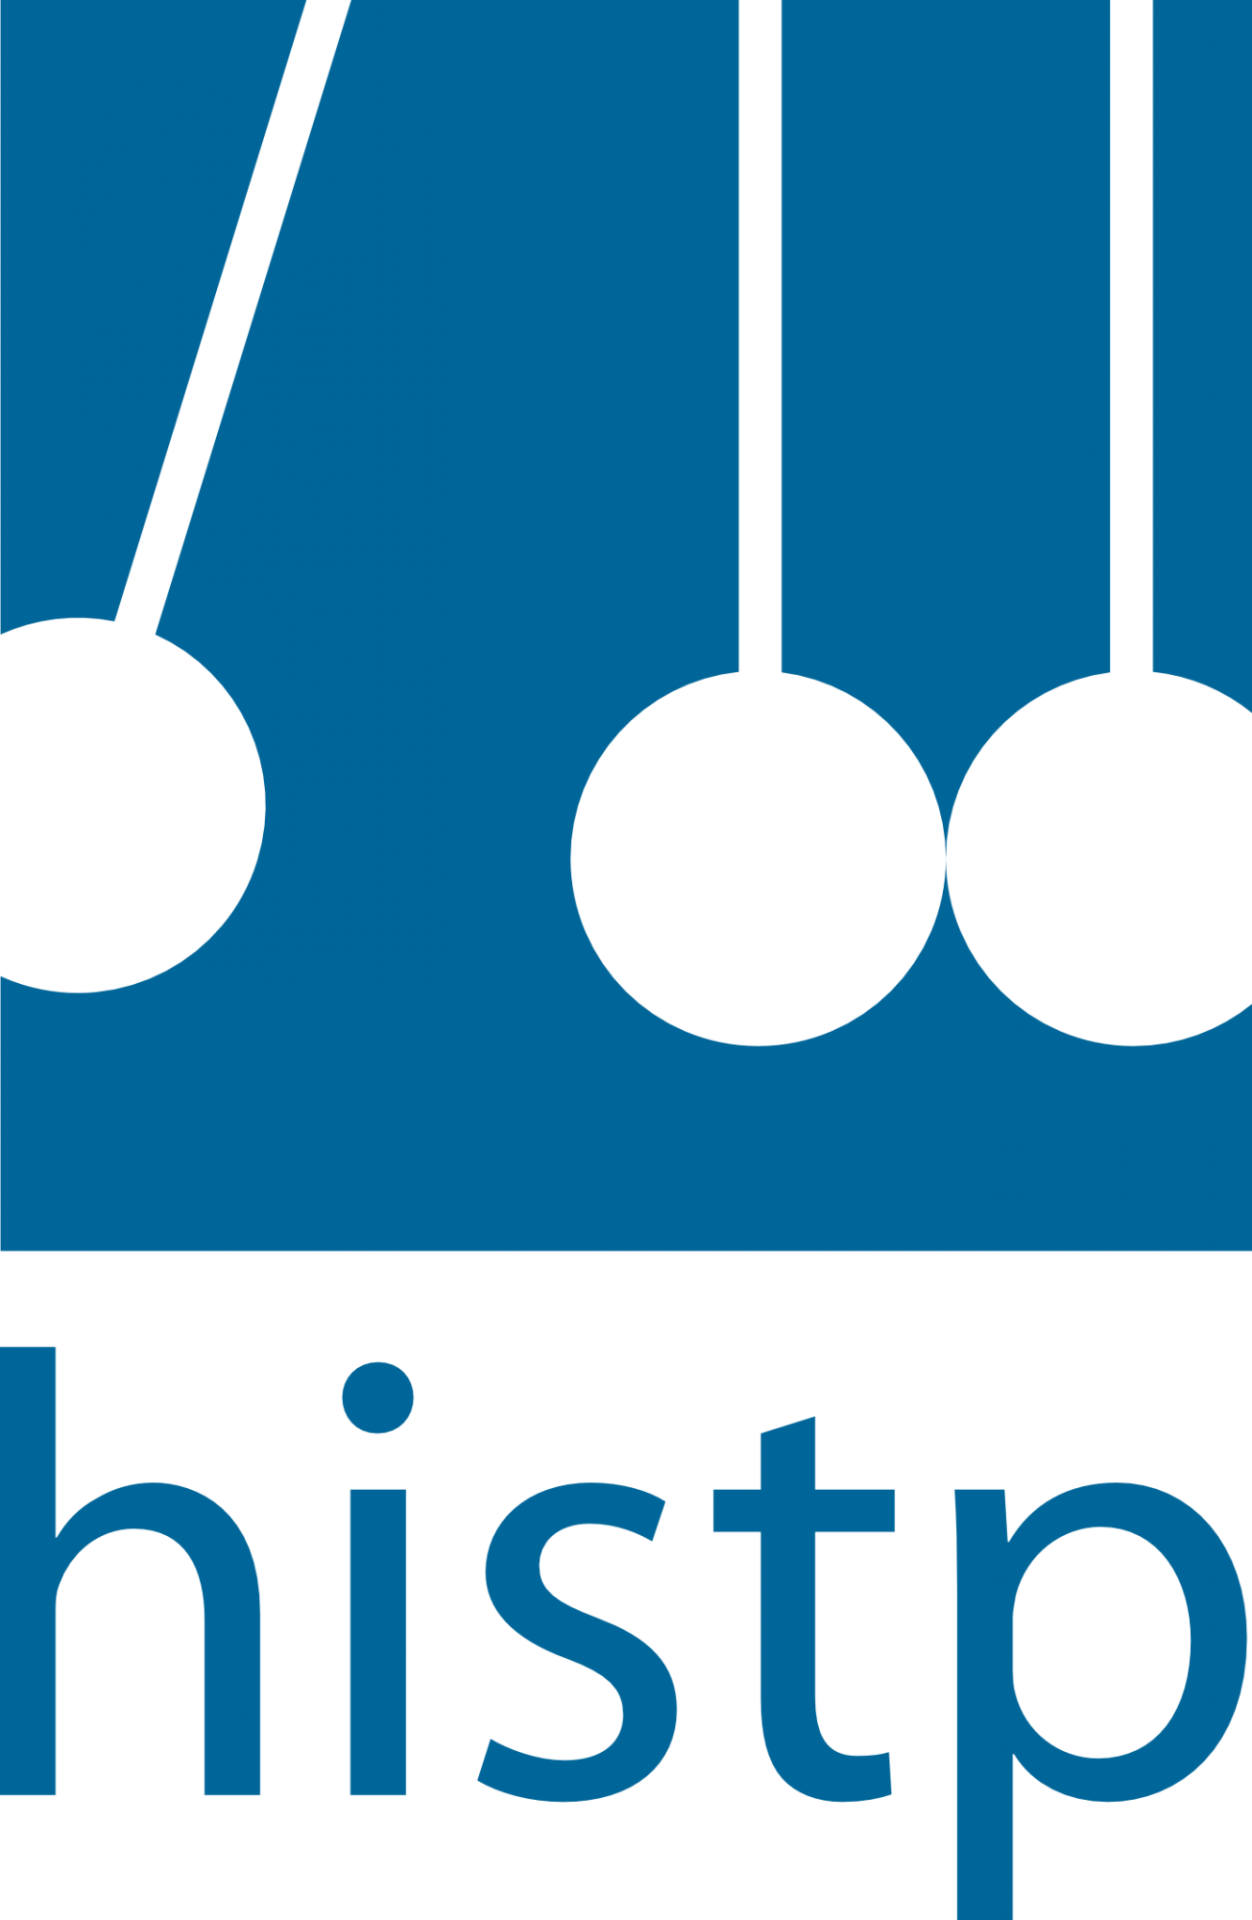 histp logo